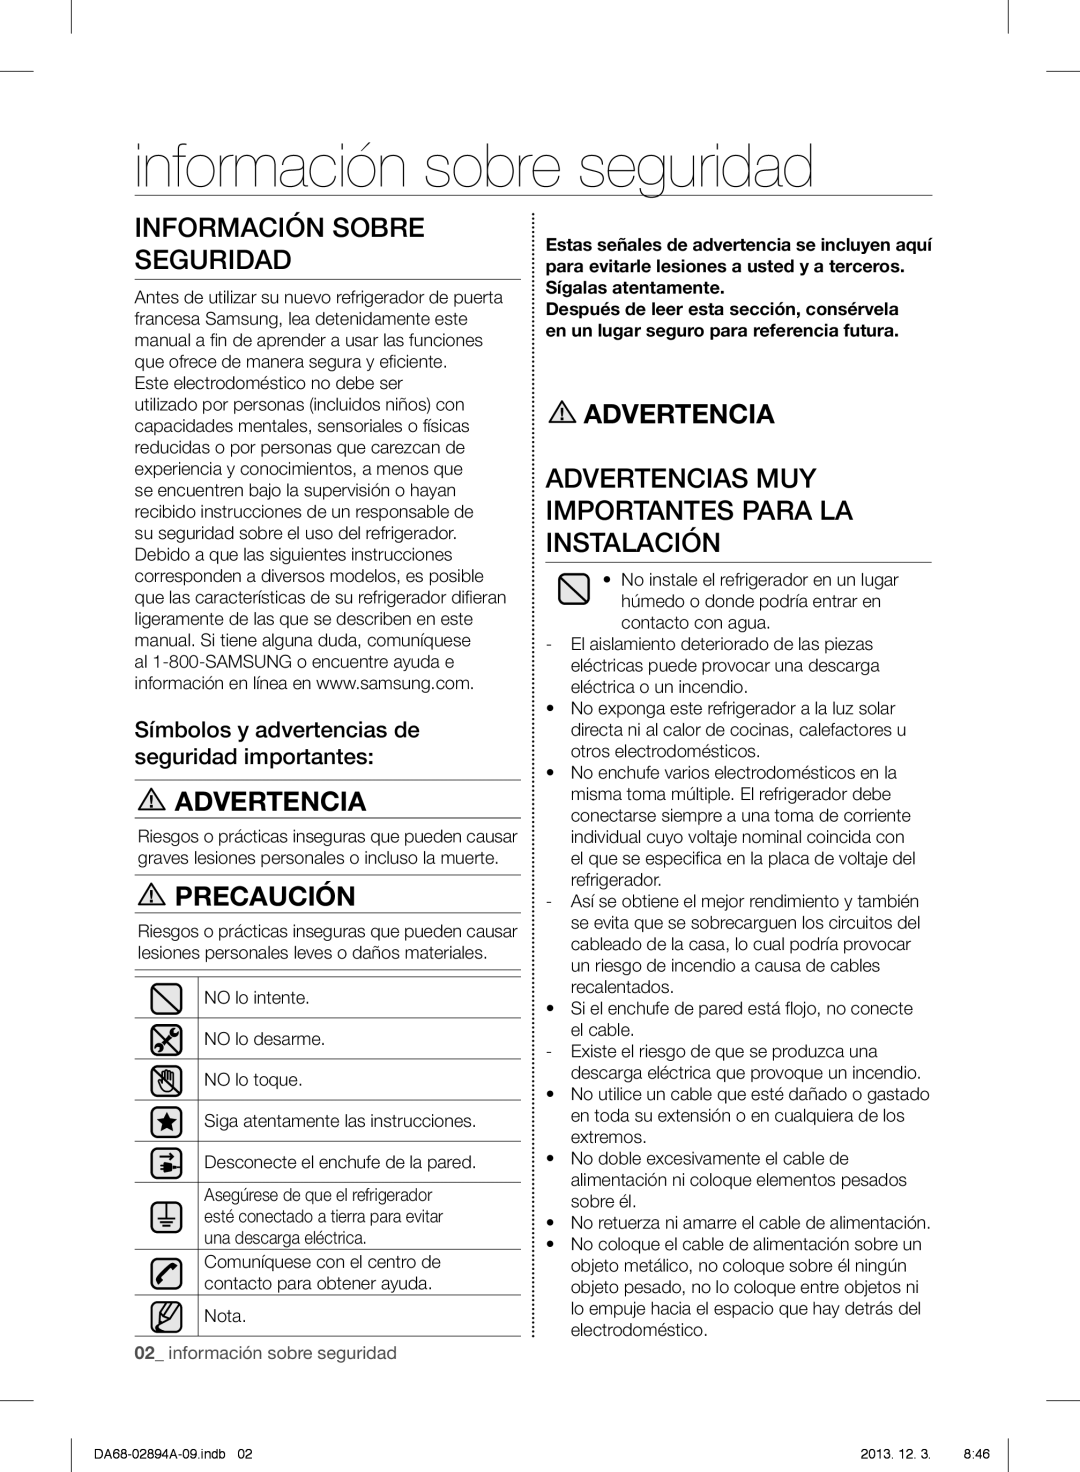 Samsung RF31FMEDBSR, RF31FMESBSR información sobre seguridad, Información Sobre Seguridad, Advertencia, Precaución 